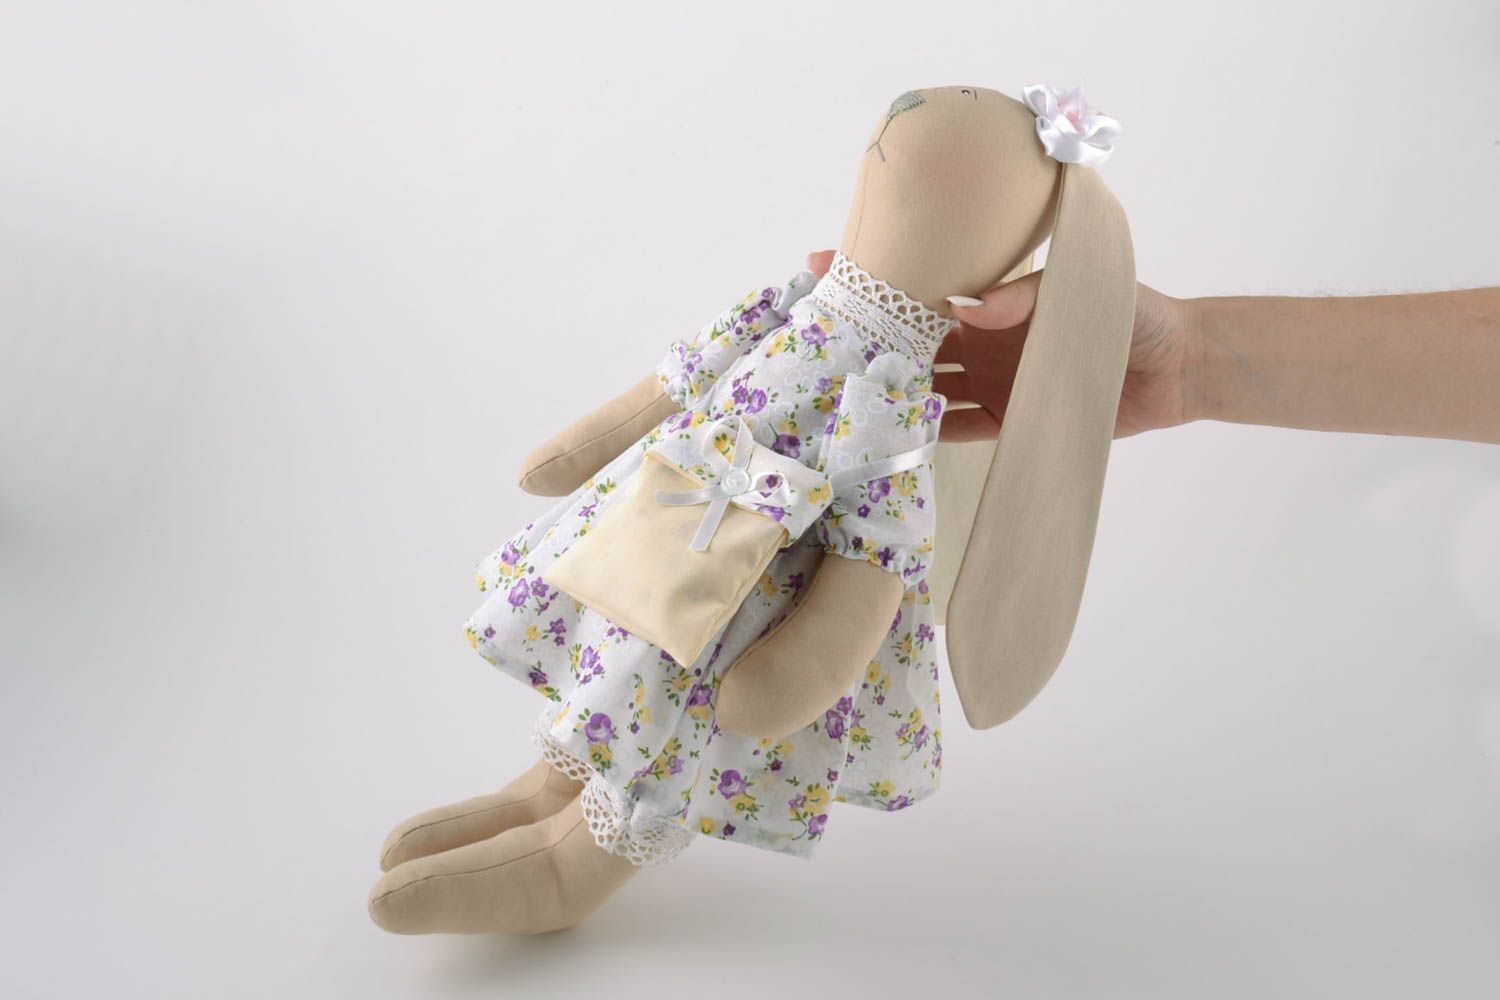 Textil Kuscheltier Hase im Kleid mit Tasche aus Leinen Spielzeug für Kinder  foto 5